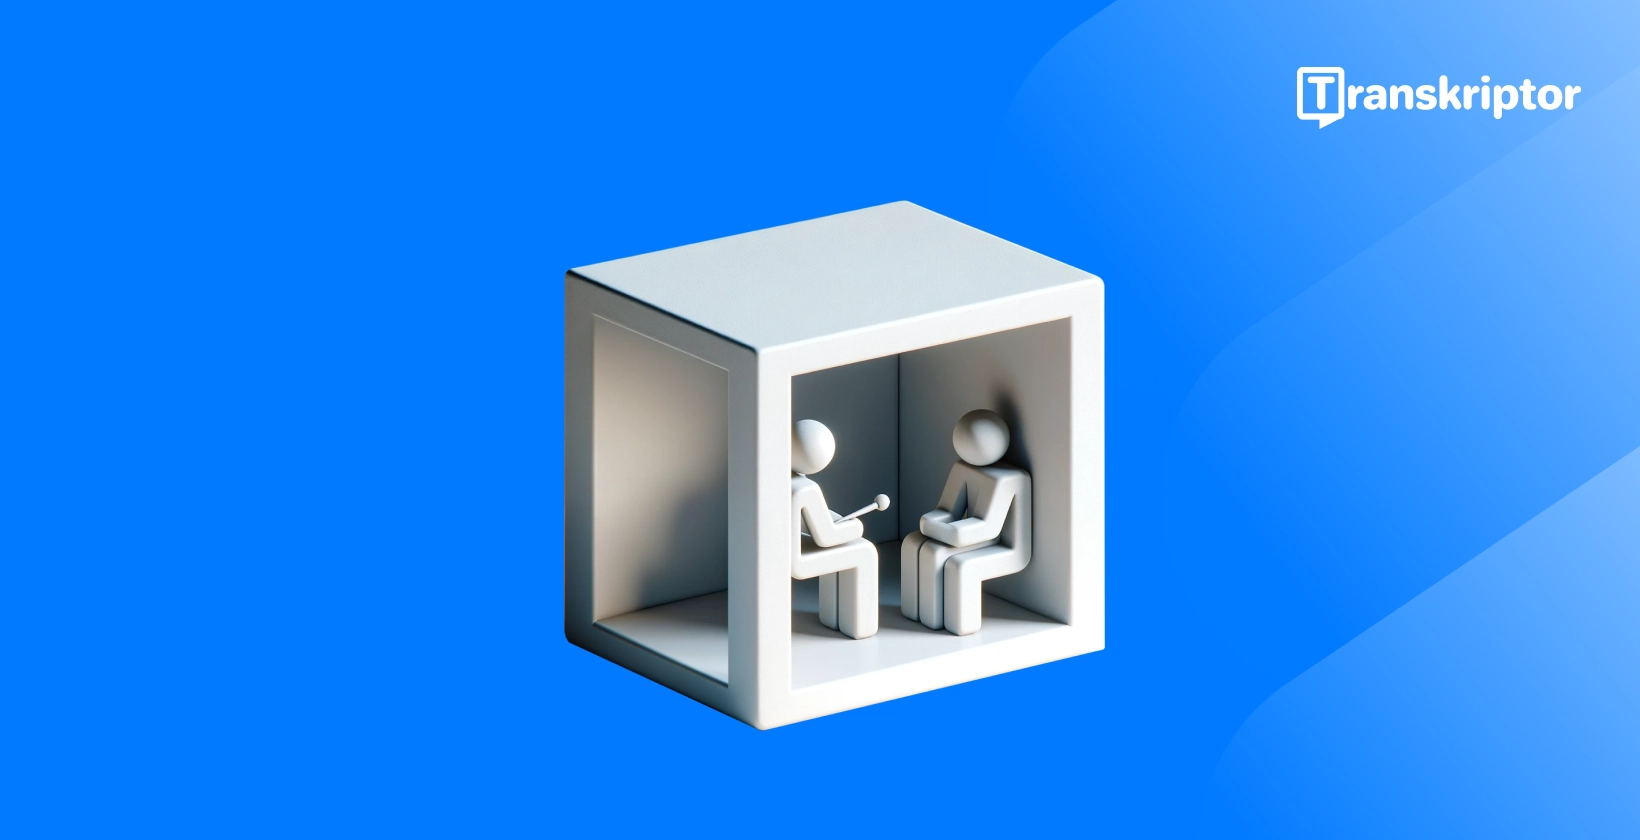 Transkribovanje intervjua prikazanih 3D figurama u kutiji, naglašavajući proces intervjuisanja radi jasnoće.